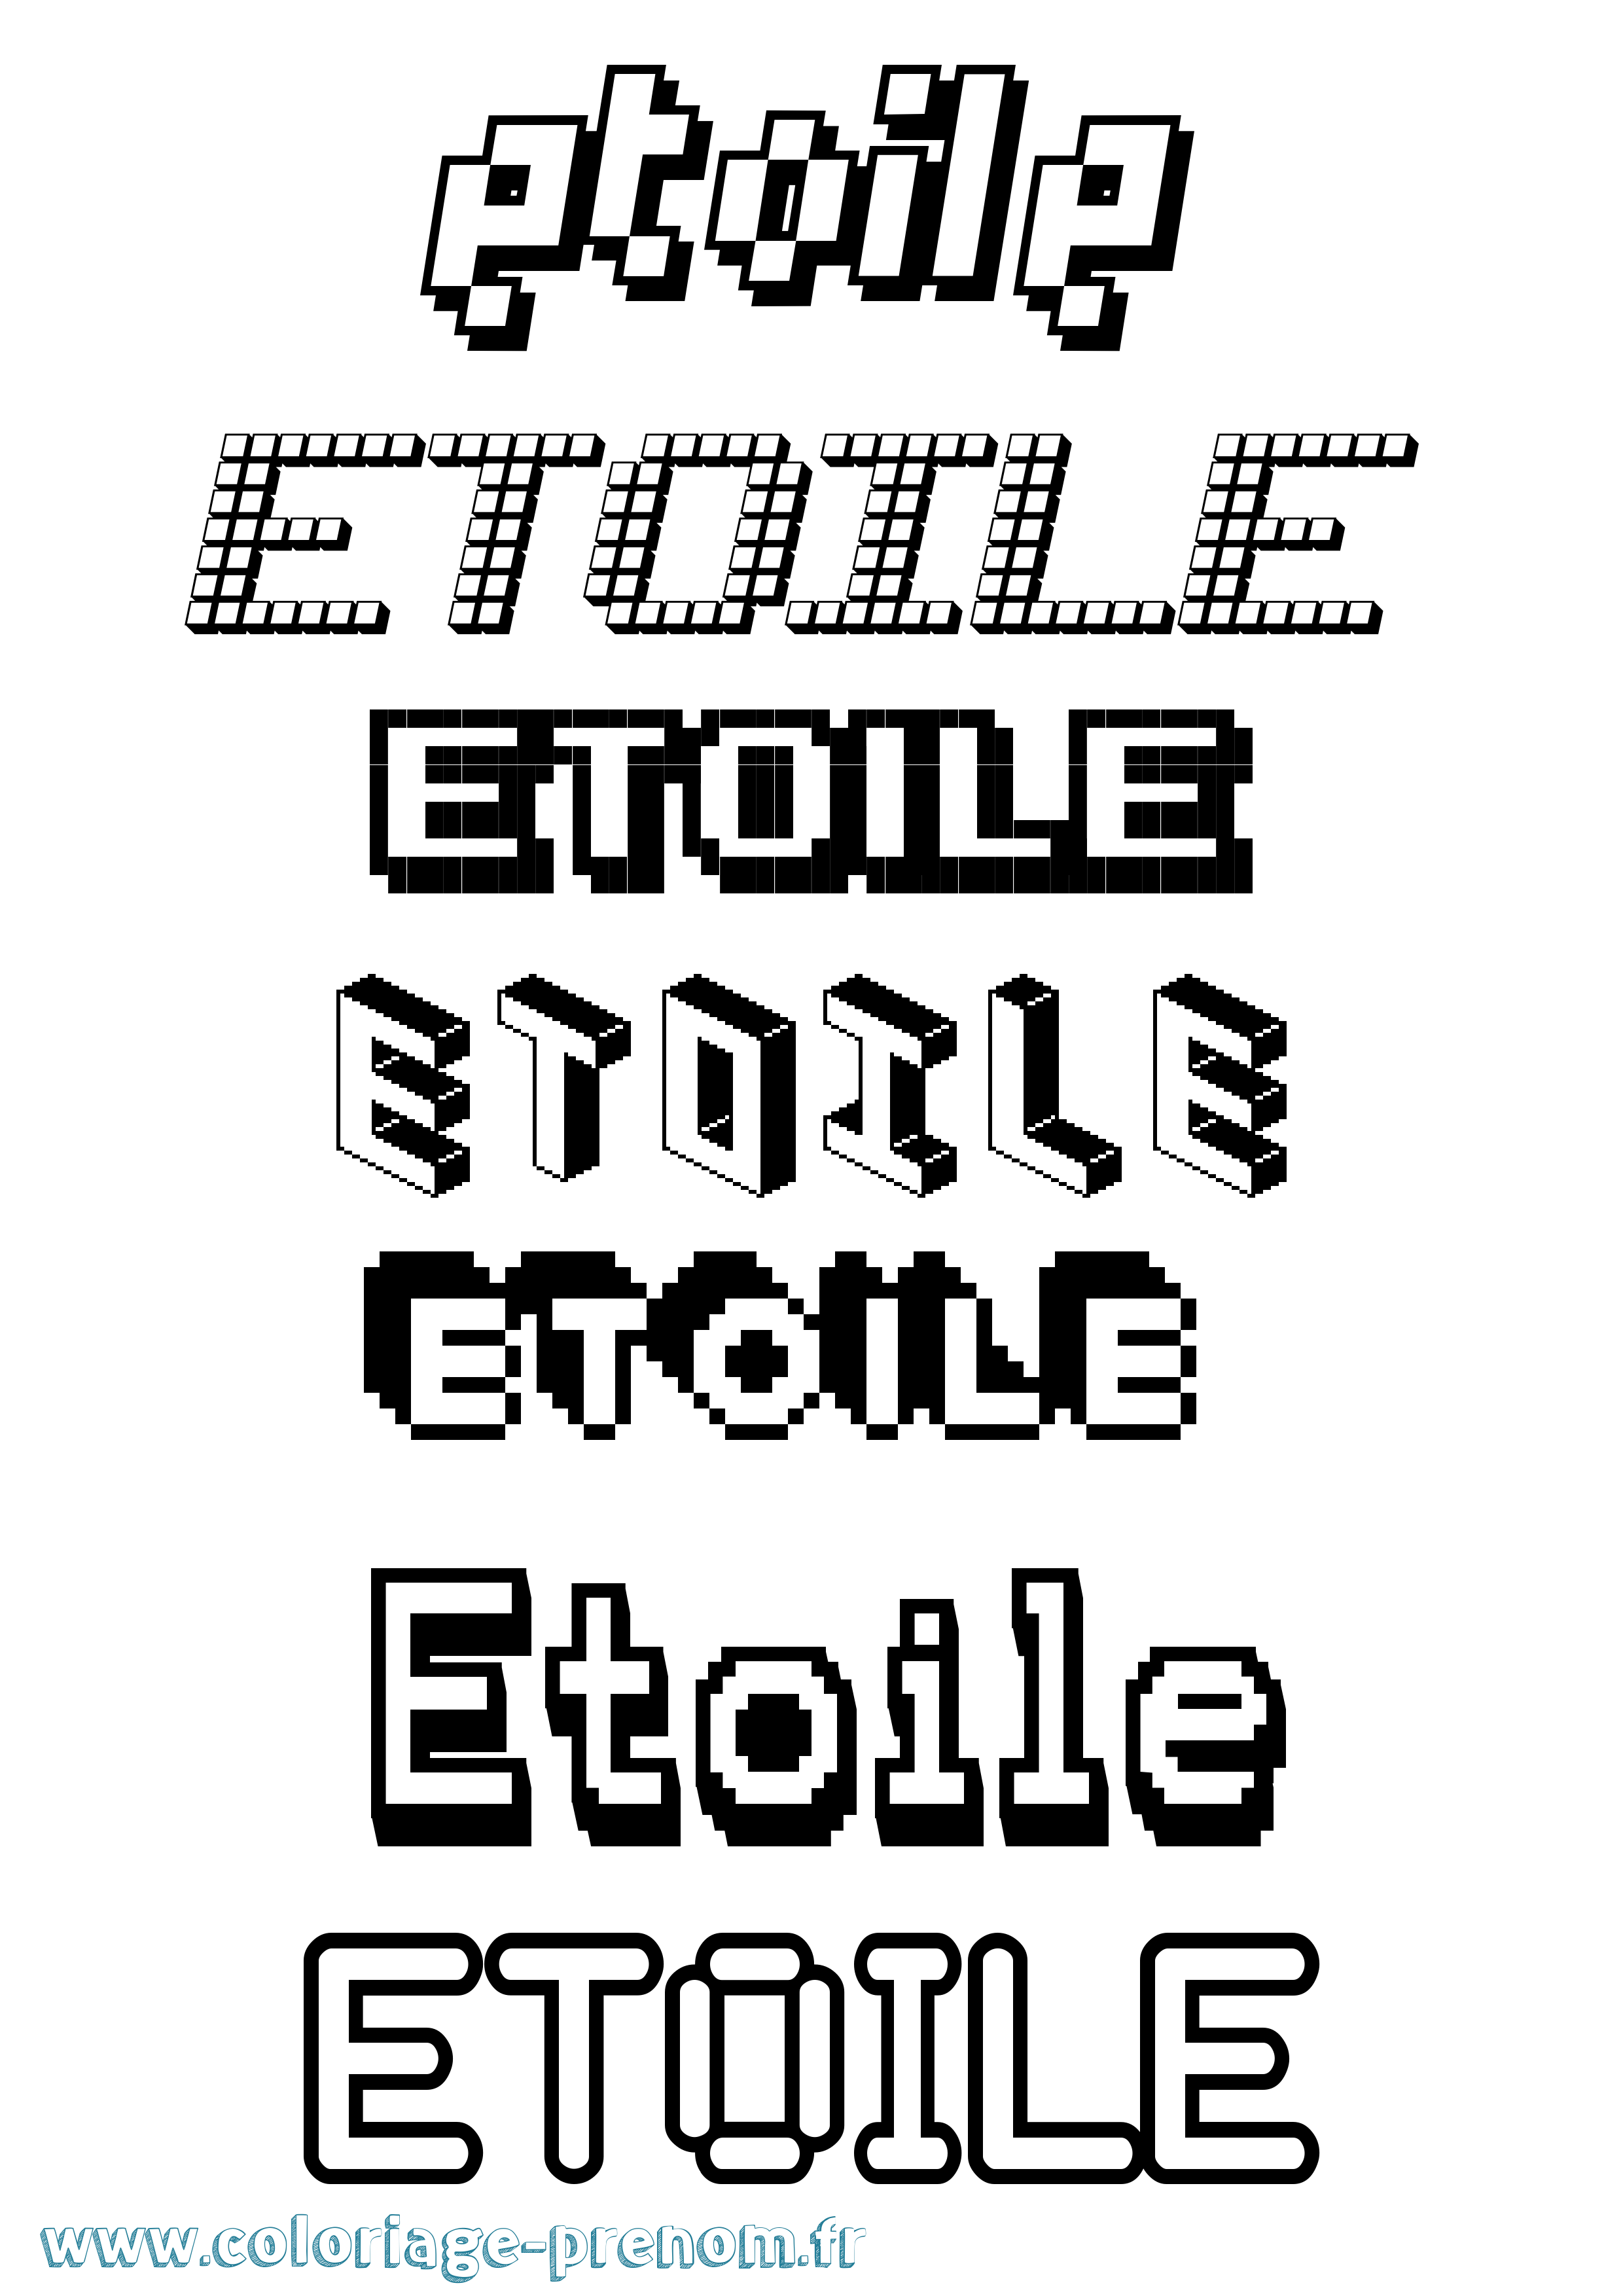 Coloriage prénom Etoile Pixel